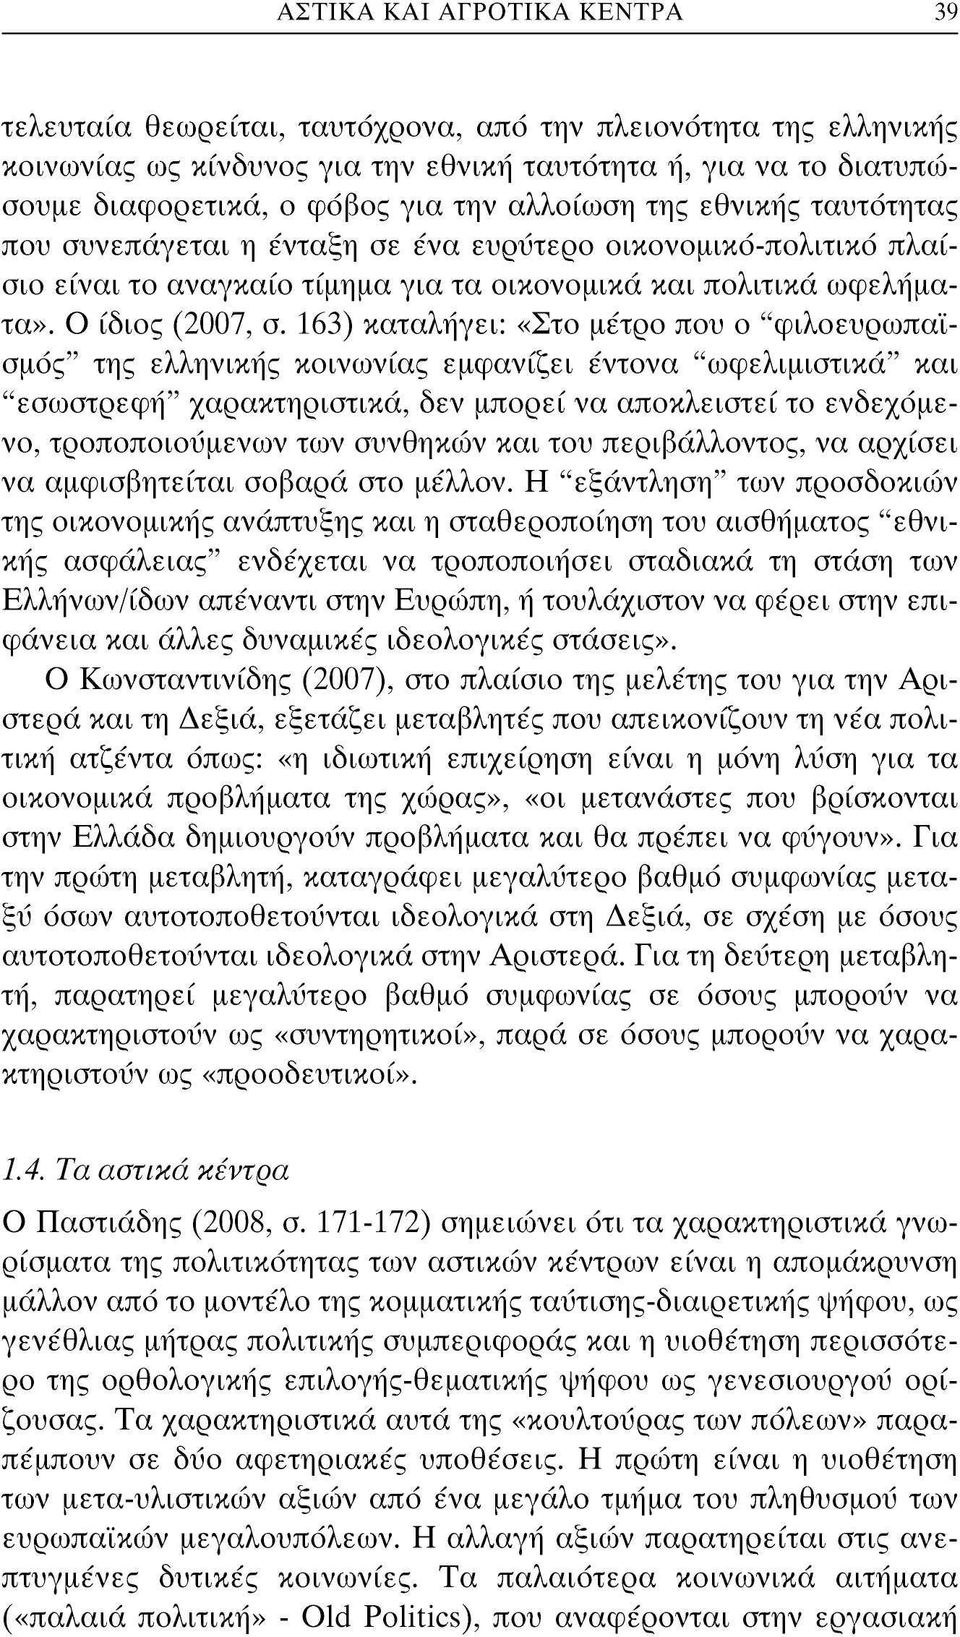 163) καταλήγει: «Στ μέτρ πυ "φιλευρωπαϊσμός" της ελληνικής κινωνίας εμφανίζει έντνα "ωφελιμιστικά" και "εσωστρεφή" χαρακτηριστικά, δεν μπρεί να απκλειστεί τ ενδεχόμεν, τρππιυμένων των συνθηκών και τυ